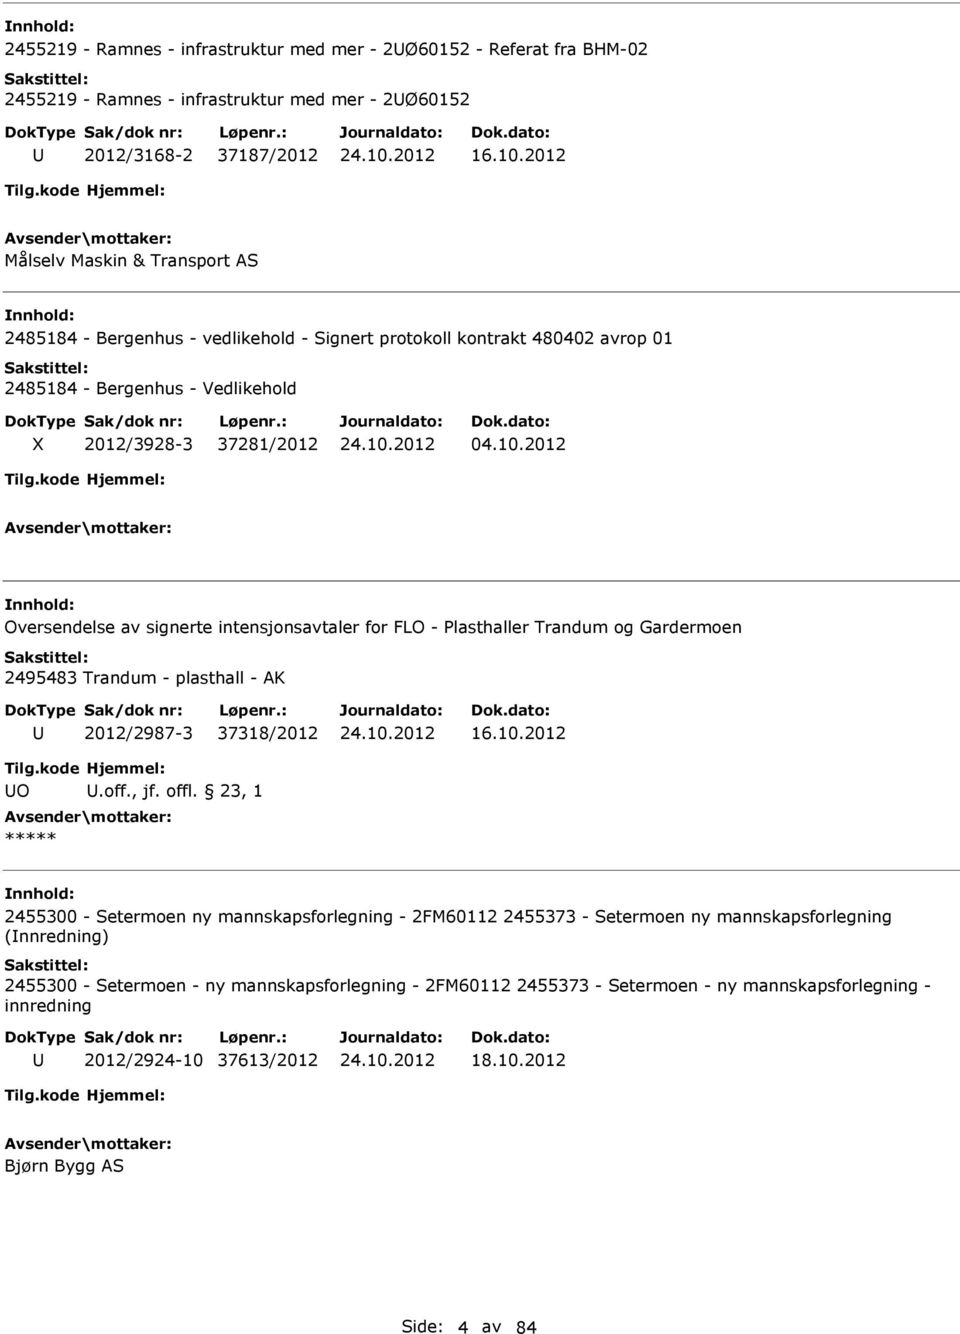 2012 Oversendelse av signerte intensjonsavtaler for FLO - Plasthaller Trandum og Gardermoen 2495483 Trandum - plasthall - AK 2012/2987-3 37318/2012 16.10.2012 O.off., jf. offl.